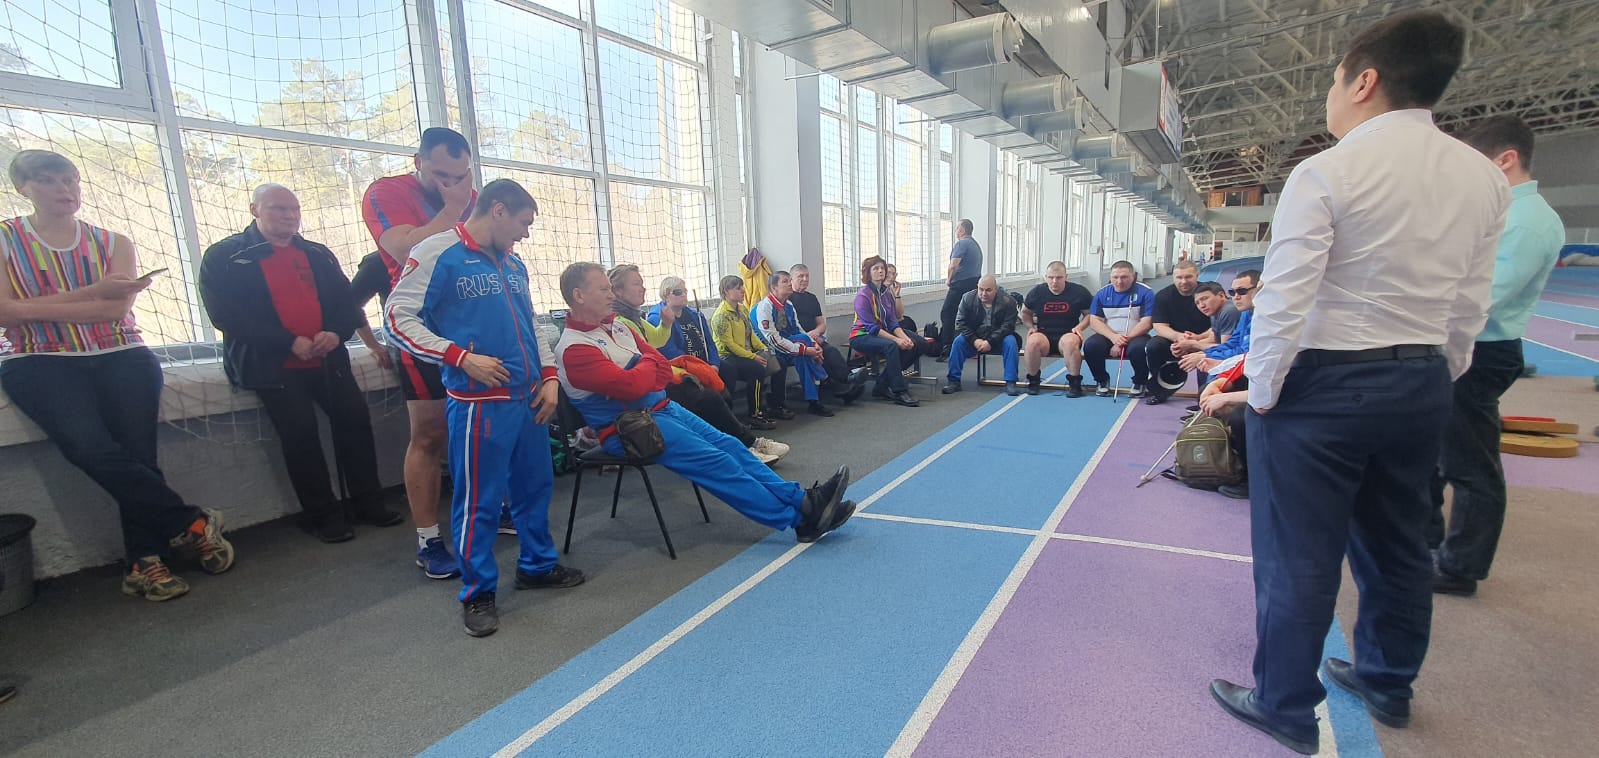  Подведены итоги чемпионата России по спорту слепых (дисциплина - пауэрлифтинг) в г. Челябинске 